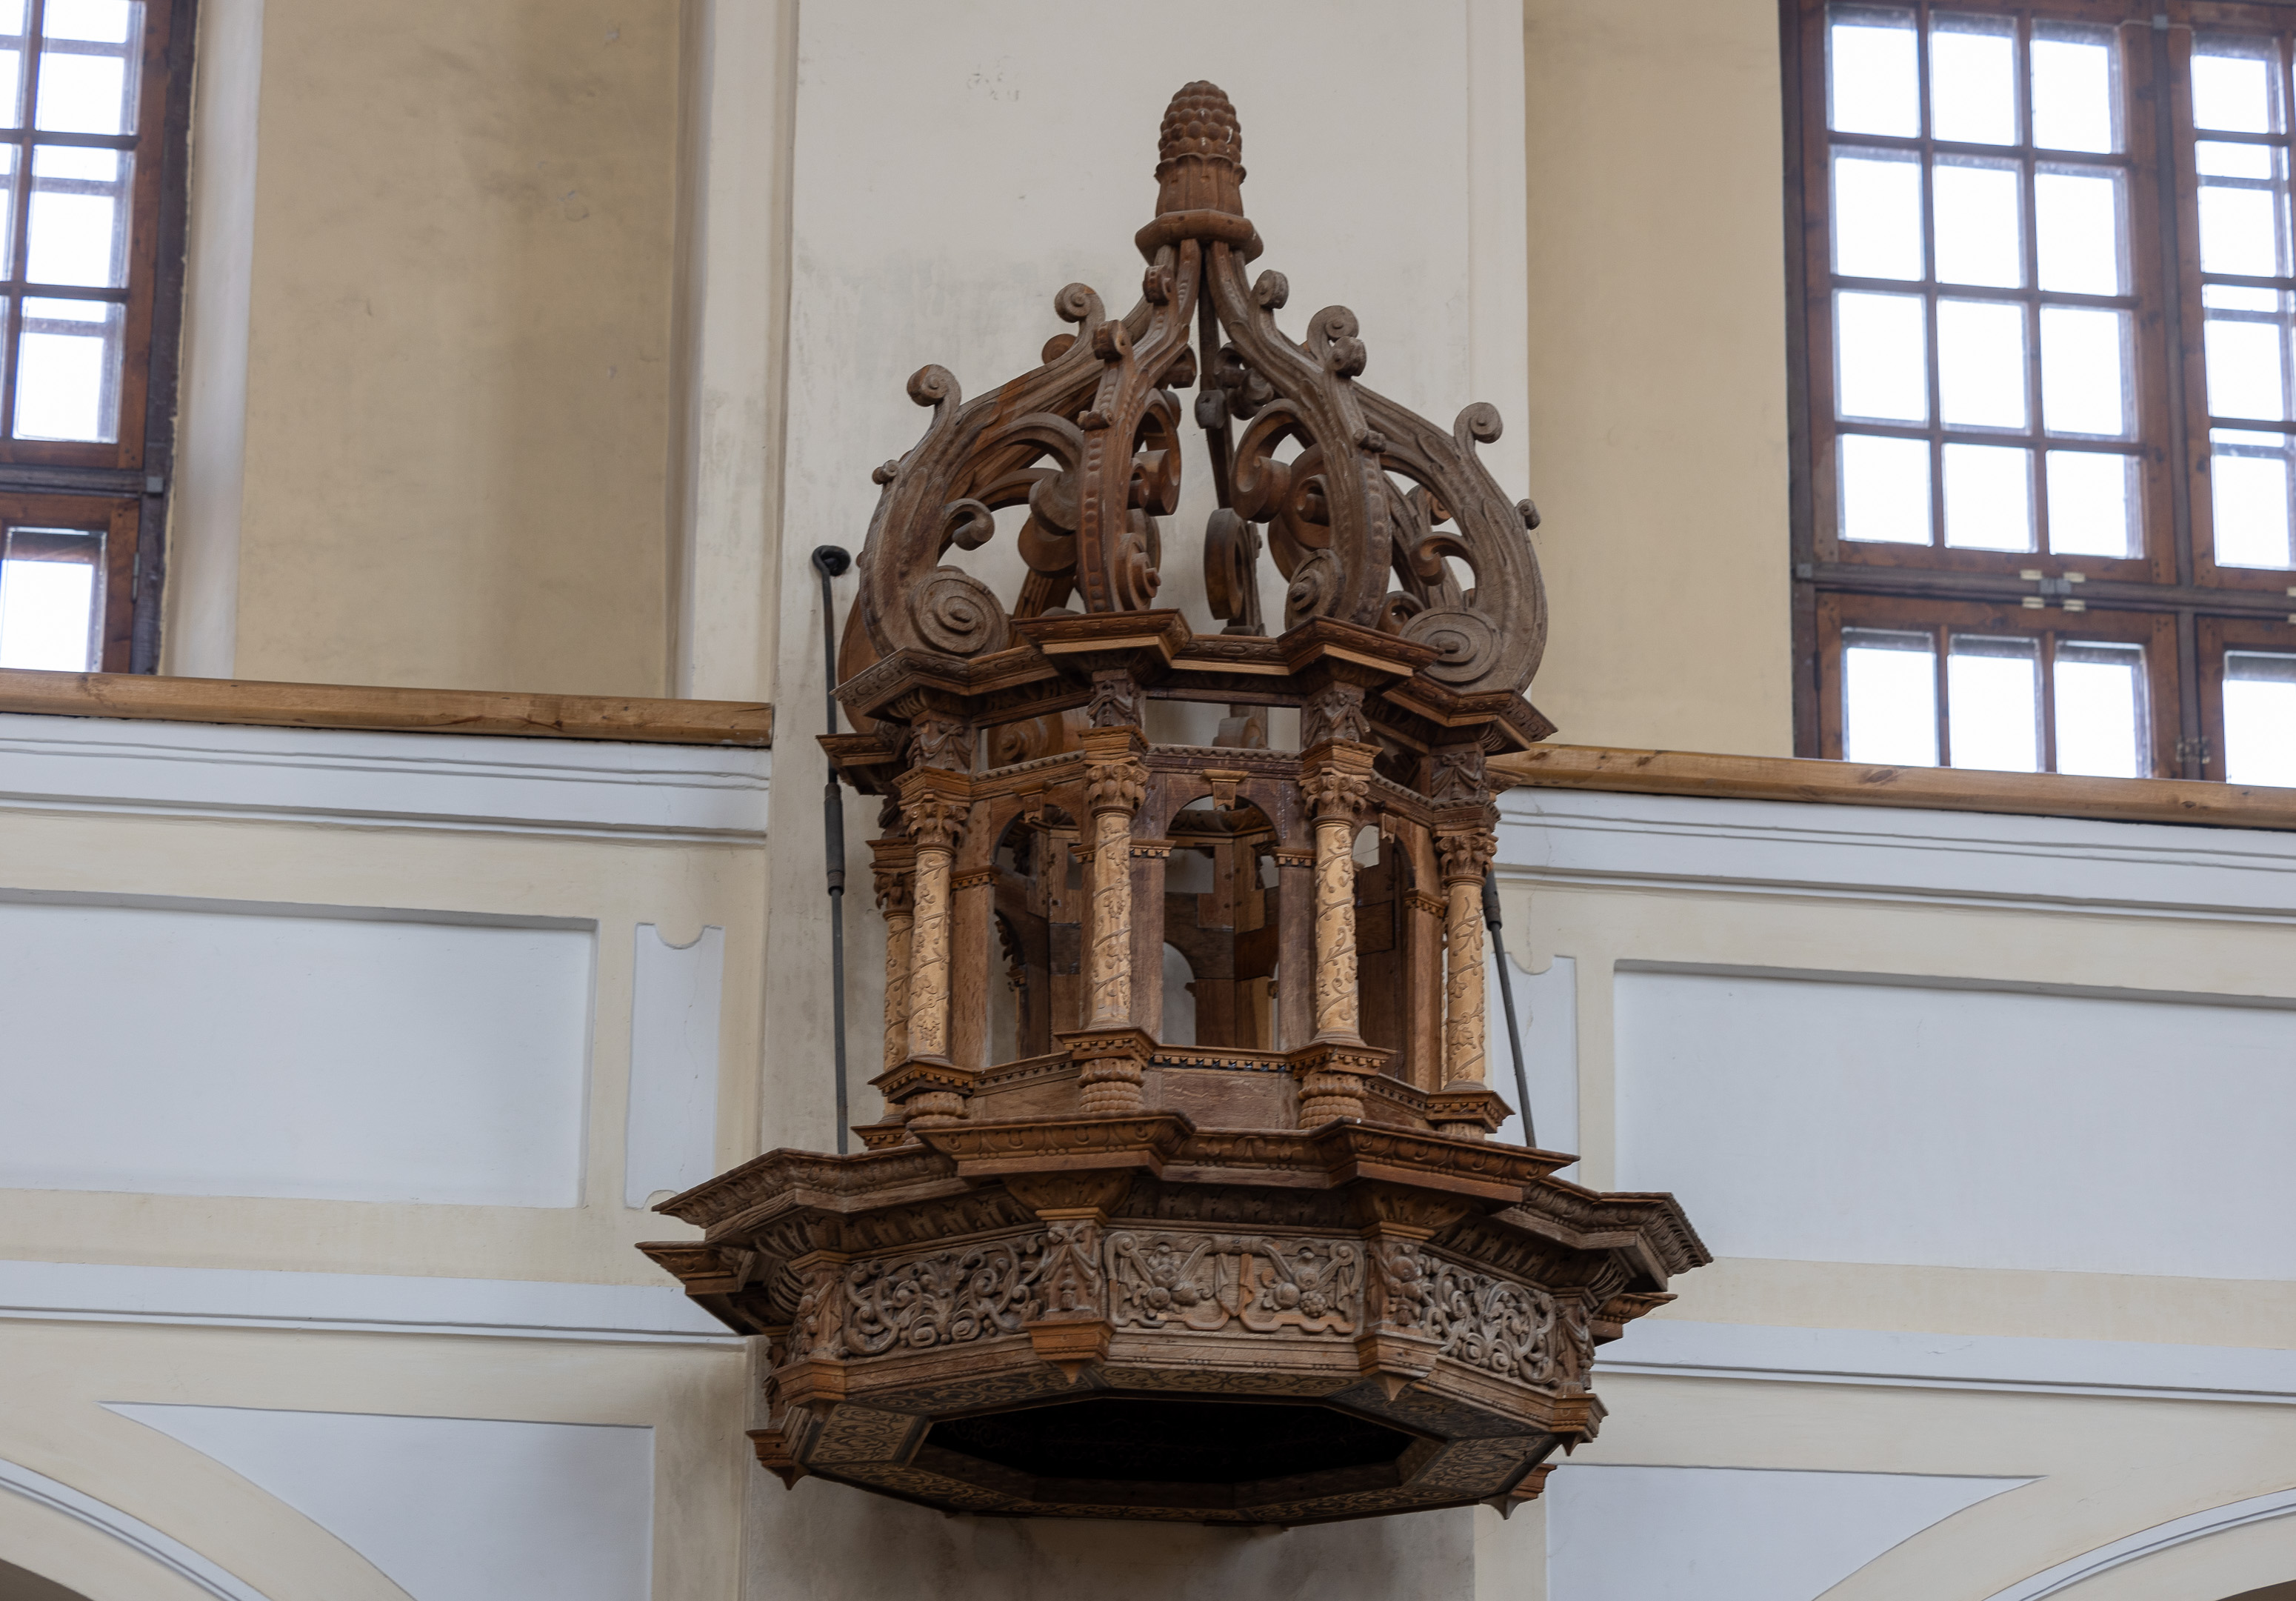 Evangelikų reformatų bažnyčioje išlikusi  XVII a. renesansinė ąžuolinė sakykla, gausiai ornamentuota sudėtingais drožiniais.